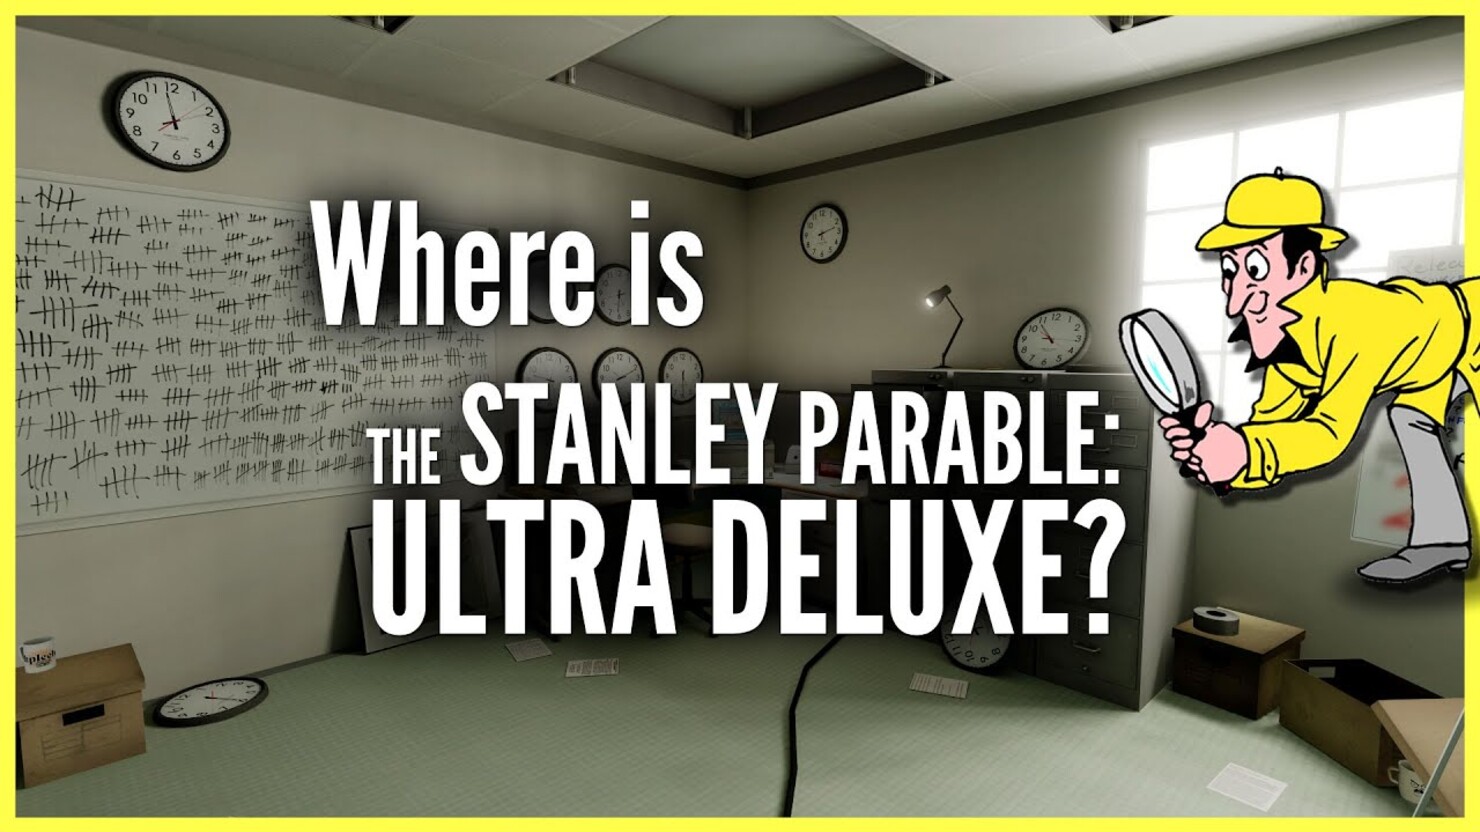 Stanley parable ultra. Stanley Parable Ultra Deluxe Стэнли. The Stanley Parable: Ultra Deluxe. The Stanley Parable на андроид. The Stanley Parable Ultra Deluxe v.1.05 (2022).